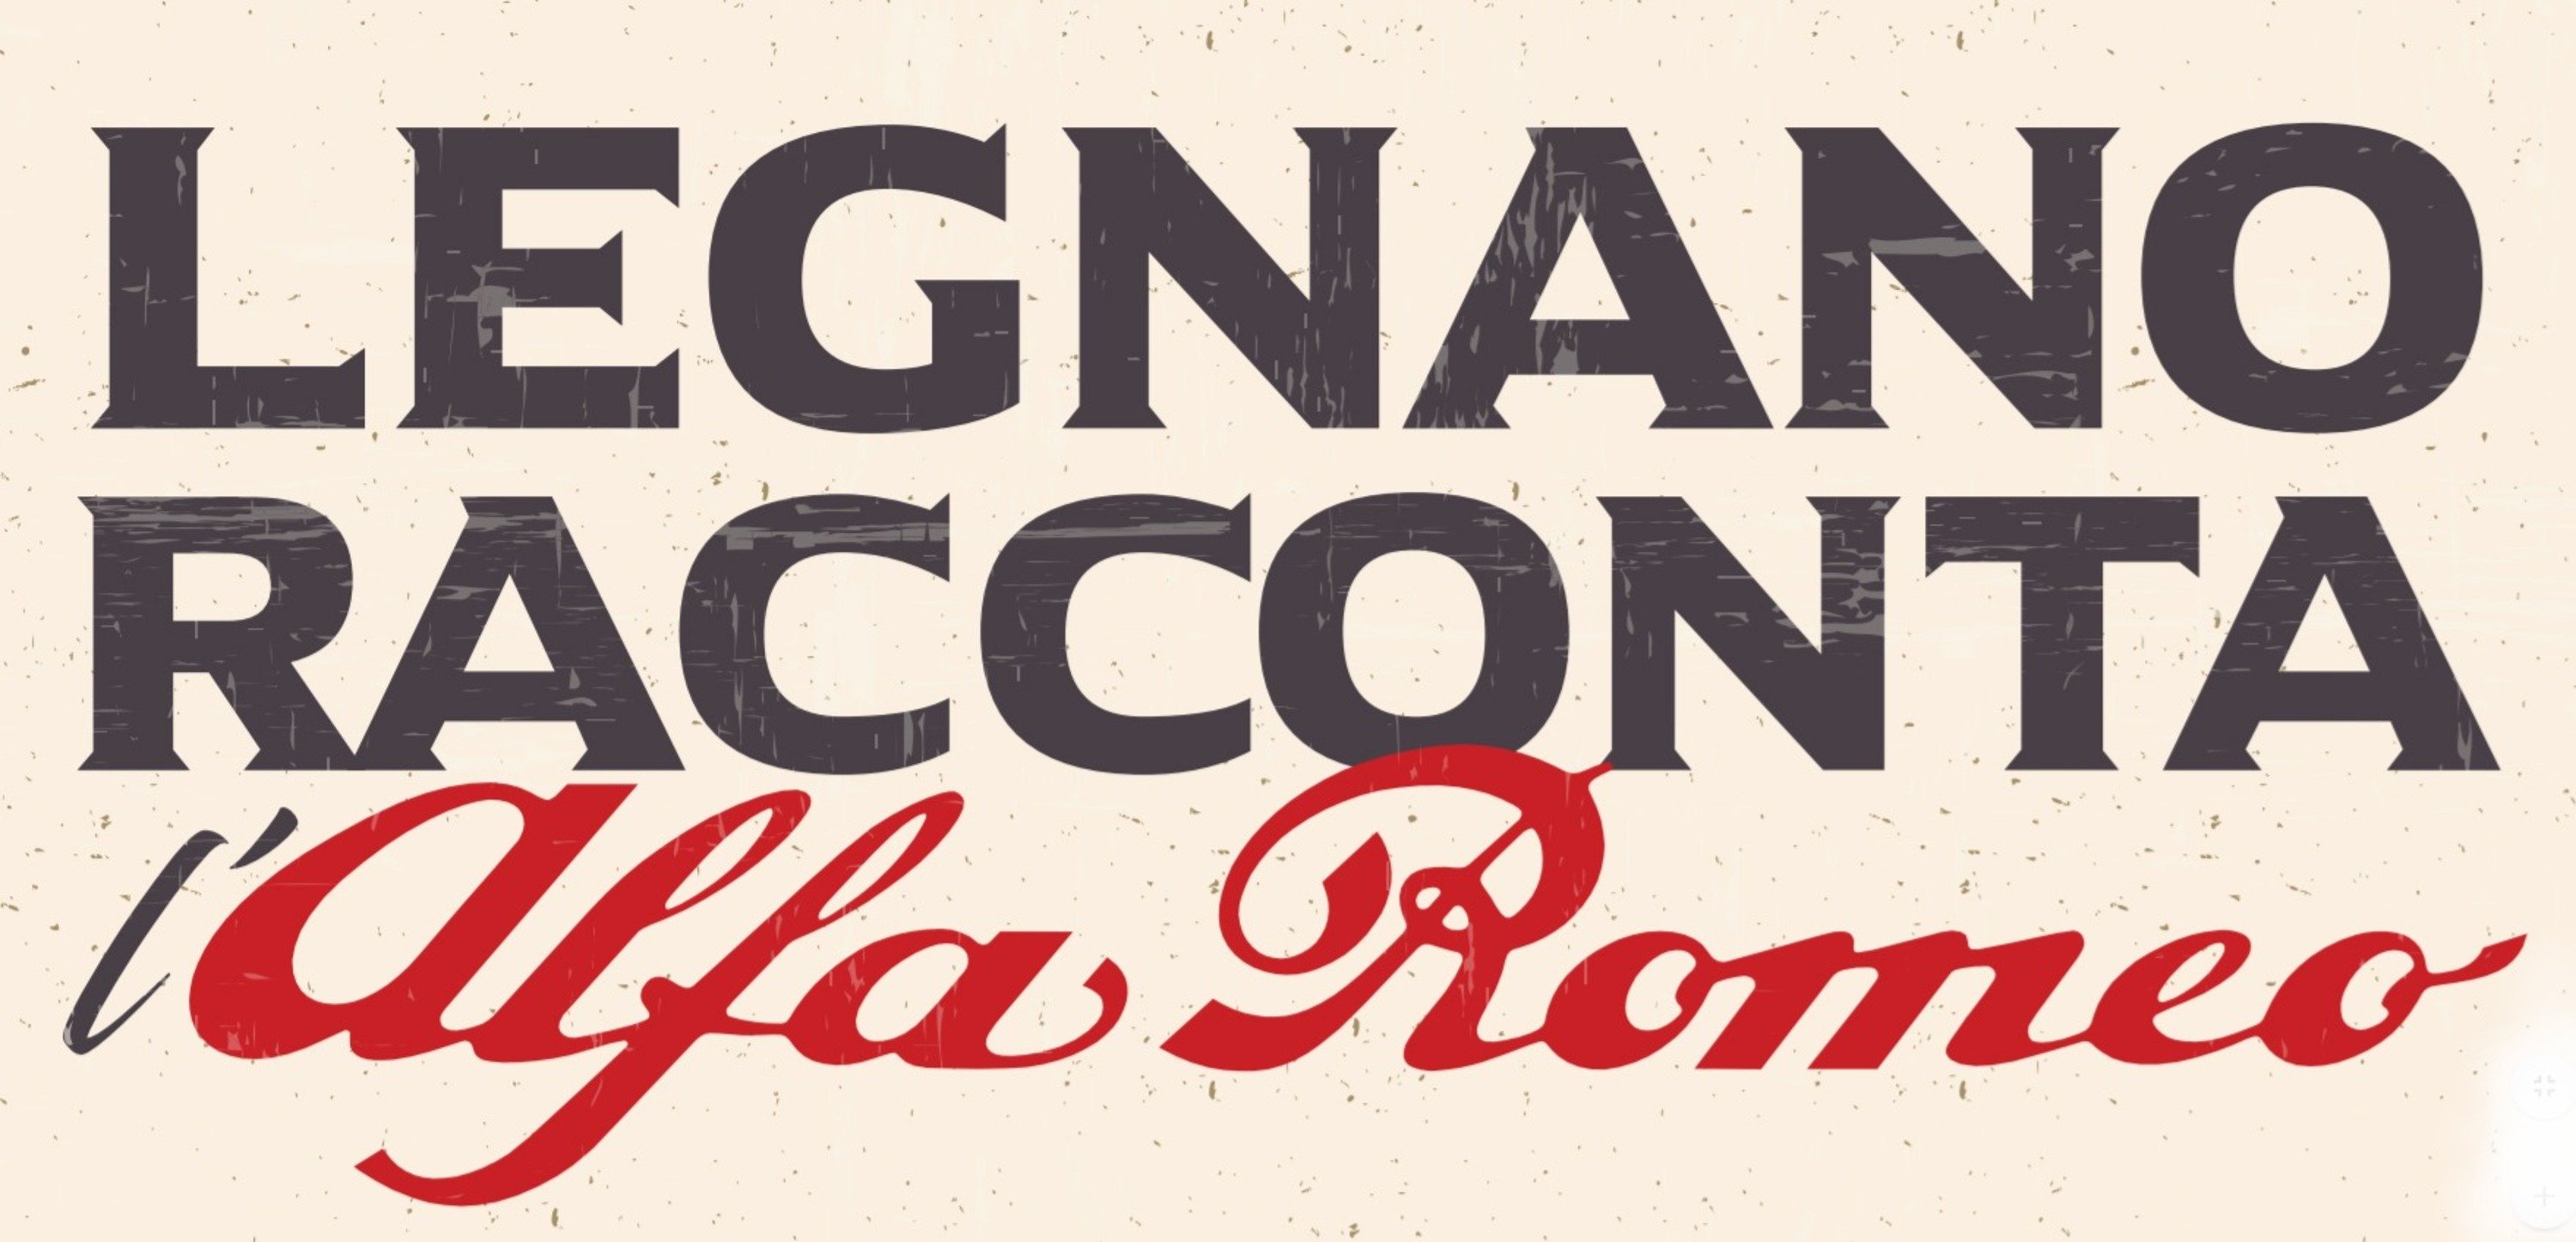 &quot;Legnano racconta l&#039;Alfa Romeo&quot;, la mostra dedicata al Biscione